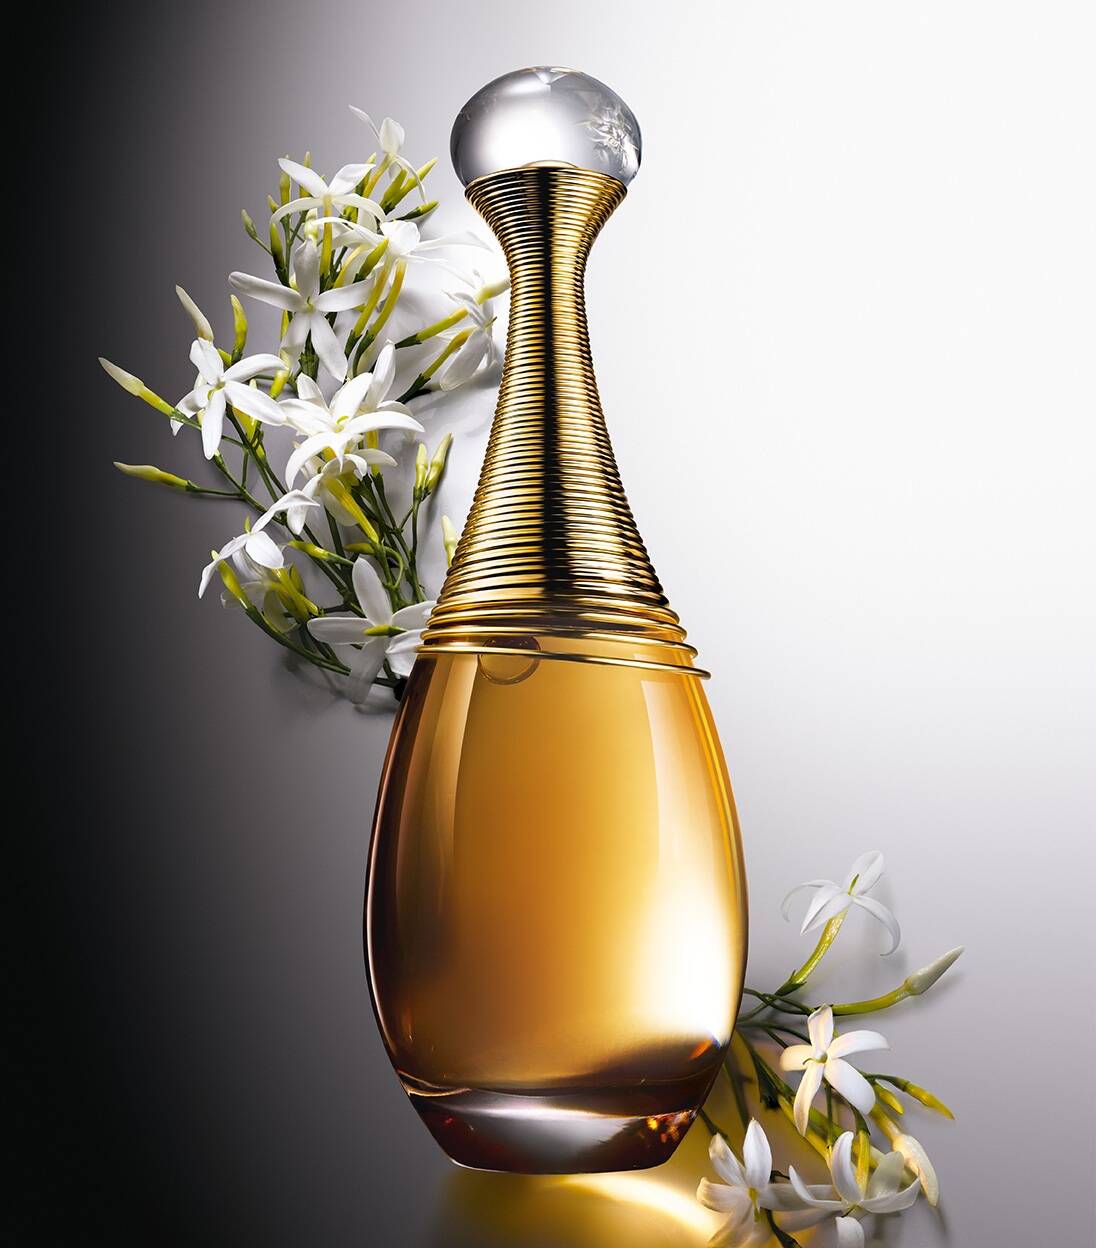 Christian Dior Perfume Collection 2014  Perfume News  Christian dior  perfume Dior perfume Perfume collection